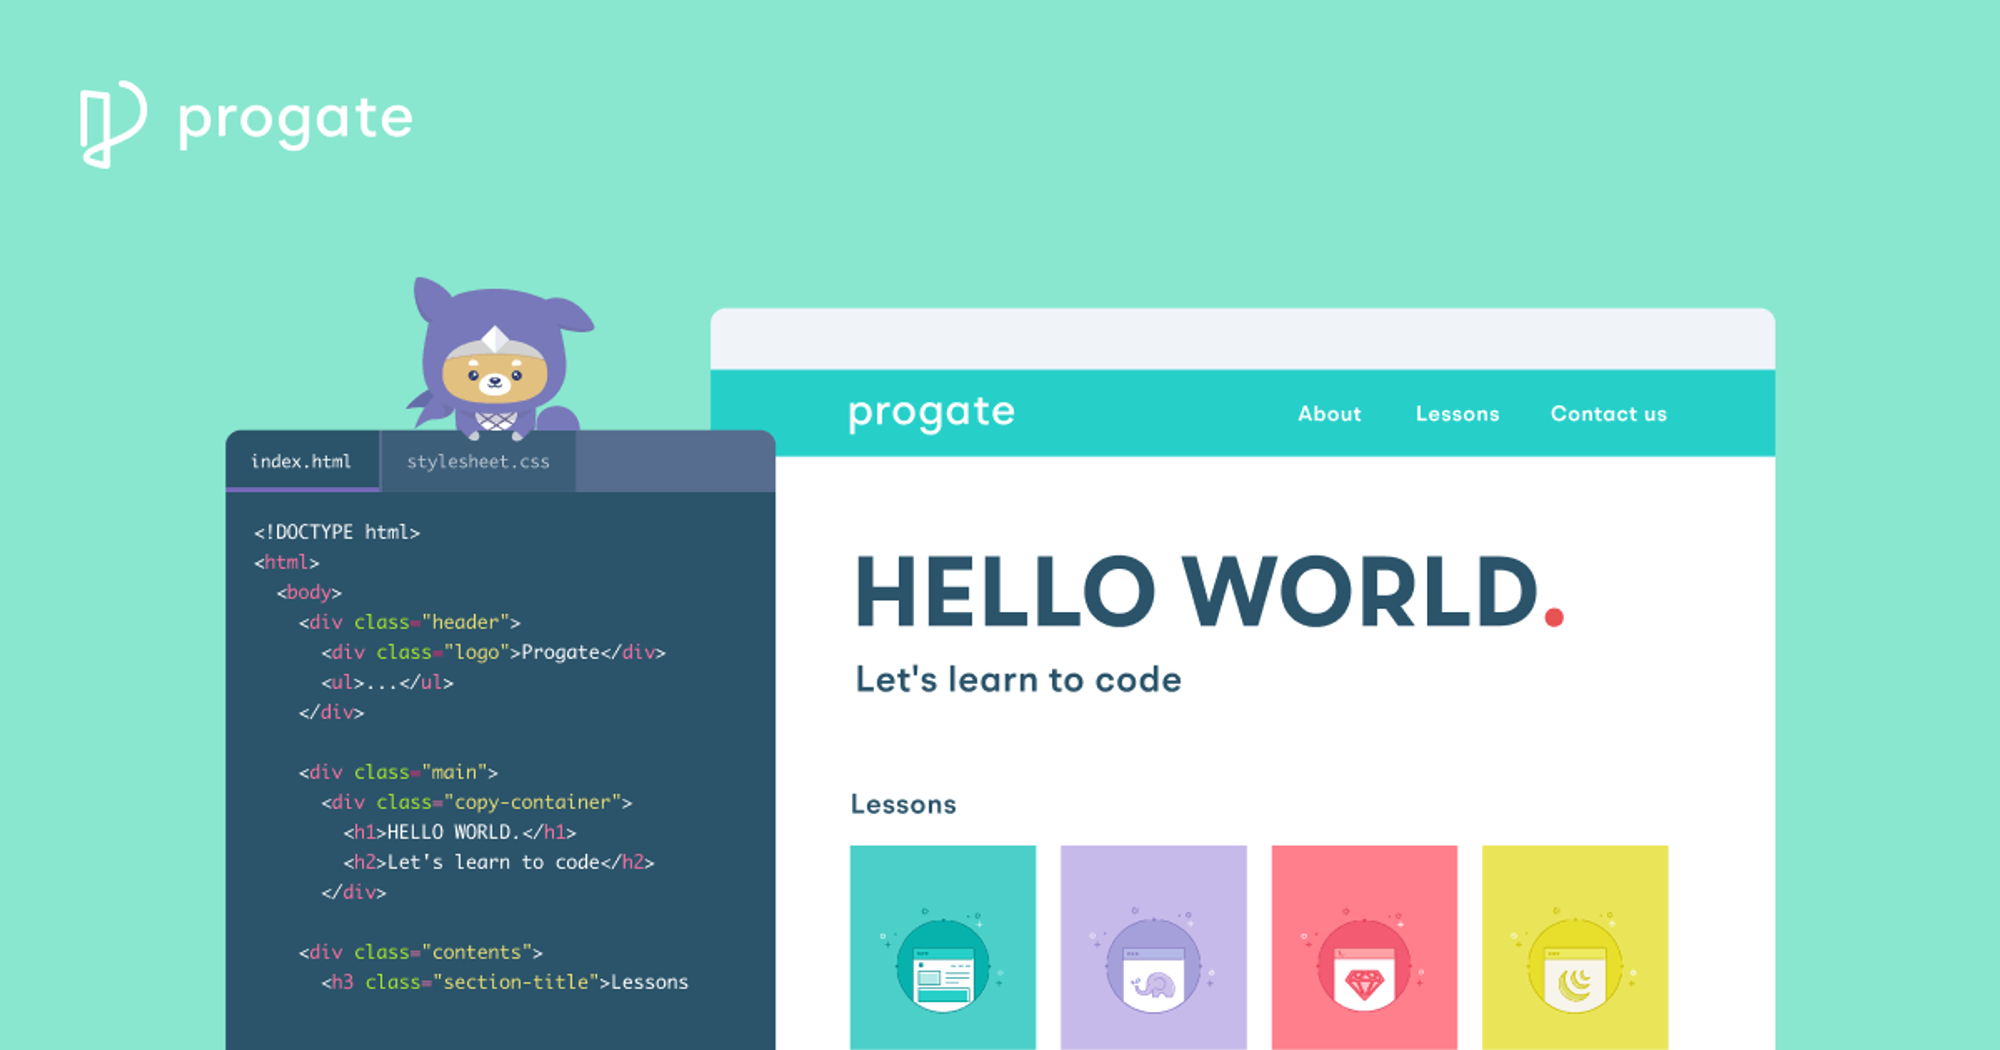 Progate(プロゲート) | Learn to code, learn to be creative.